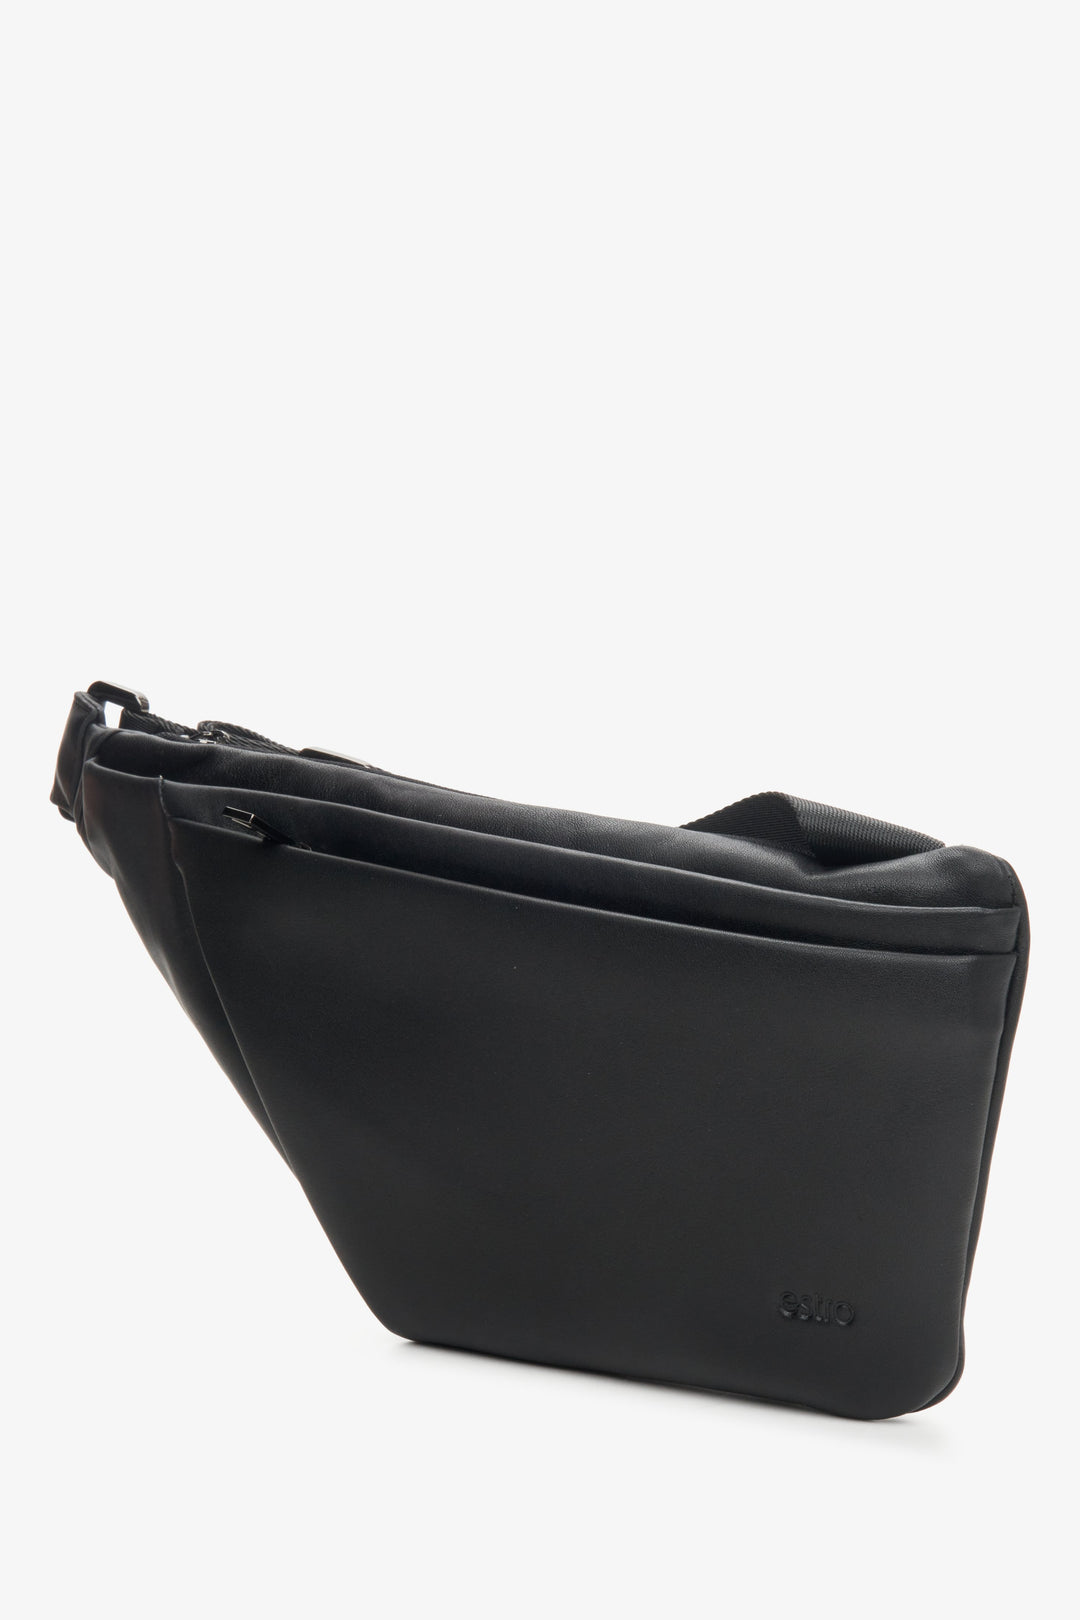 Men's Large Waist Bag made of Genuine Black Leather Estro ER00114157.